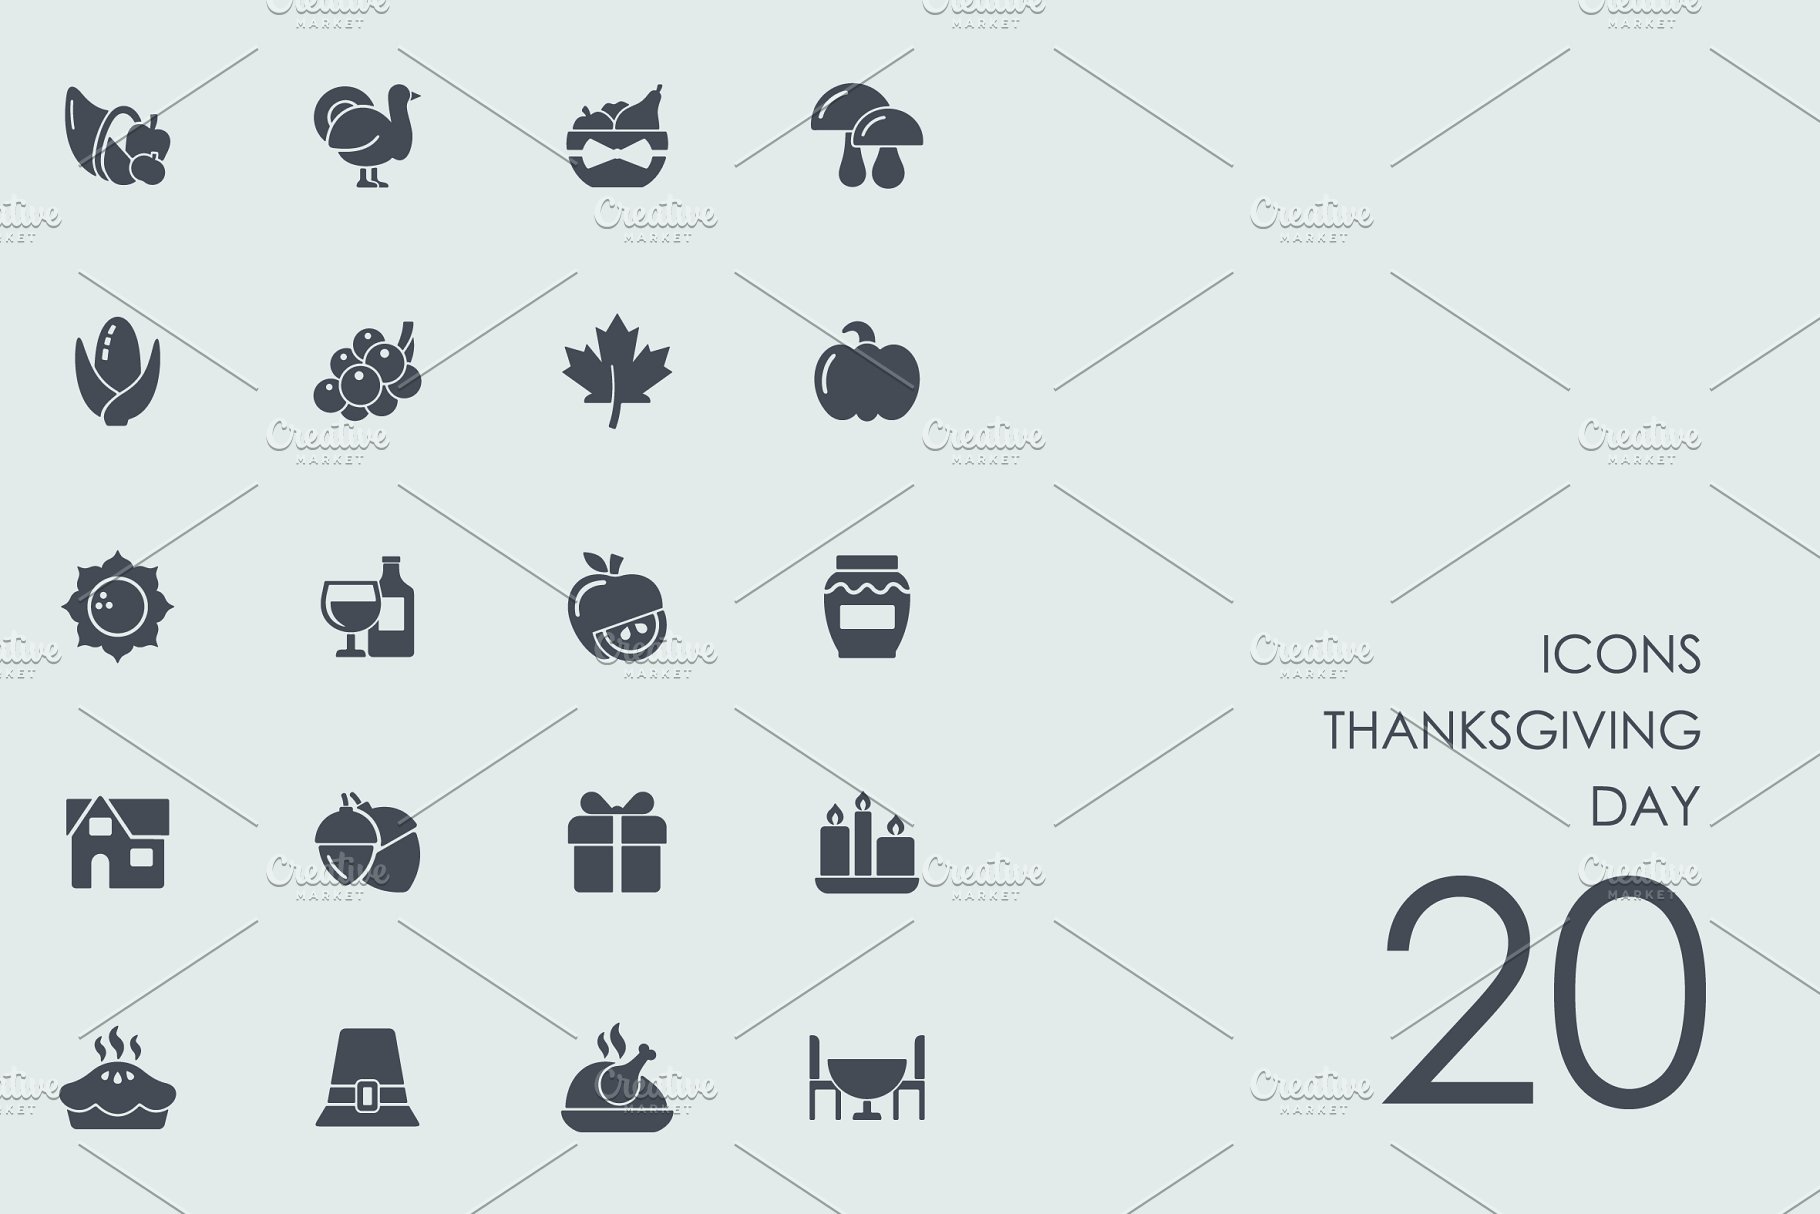 感恩节主题图标 Thanksgiving day icons插图